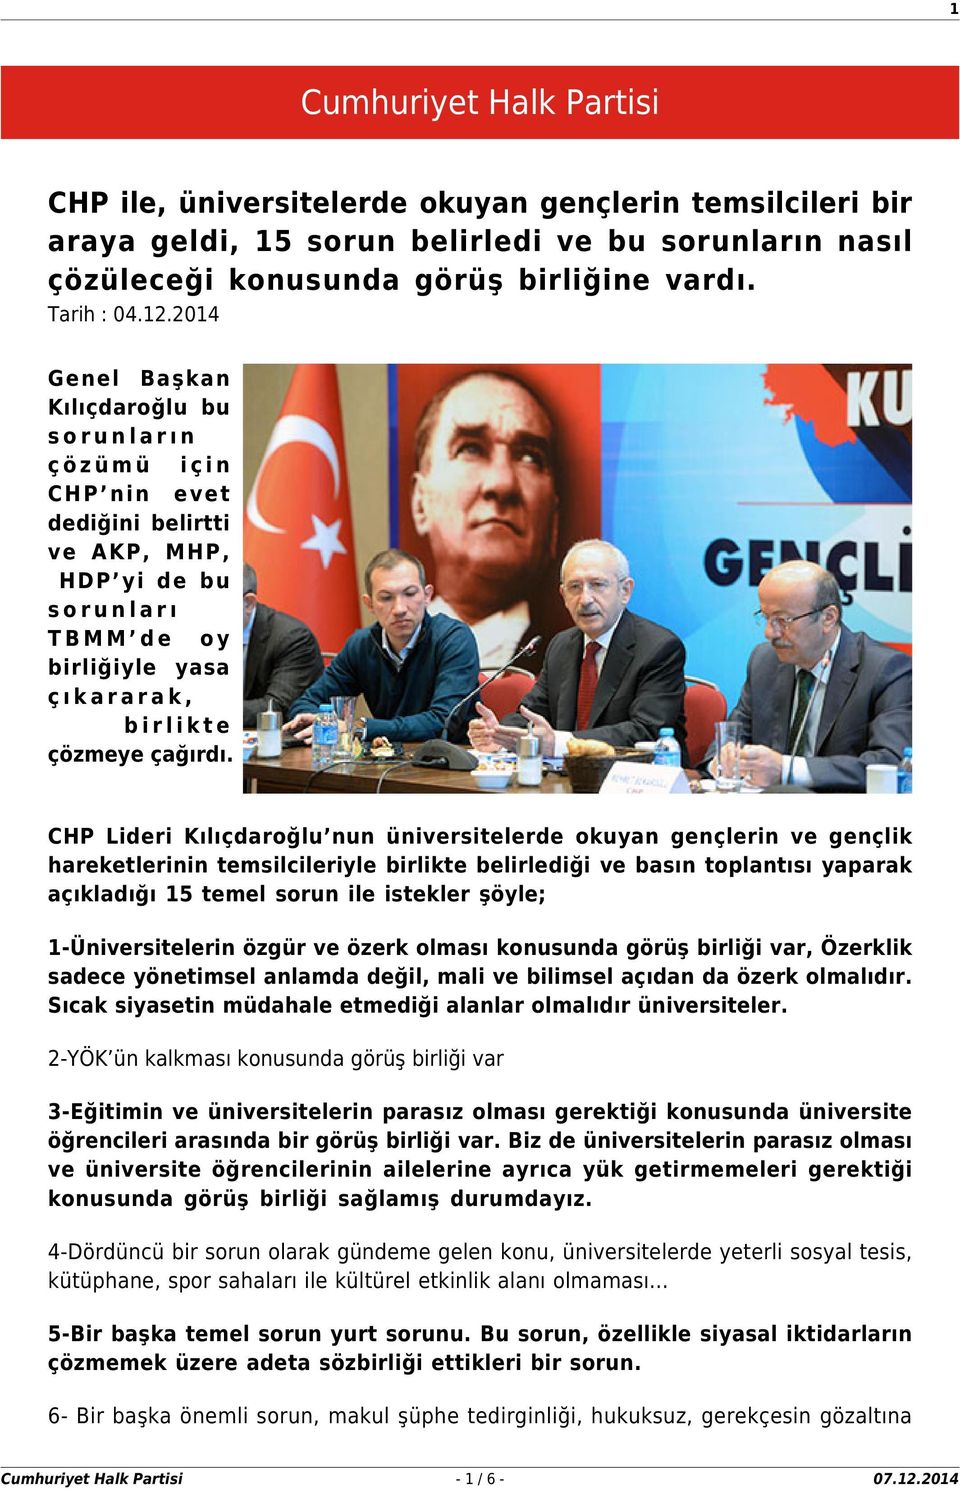 CHP Lideri Kılıçdaroğlu nun üniversitelerde okuyan gençlerin ve gençlik hareketlerinin temsilcileriyle birlikte belirlediği ve basın toplantısı yaparak açıkladığı 15 temel sorun ile istekler şöyle;